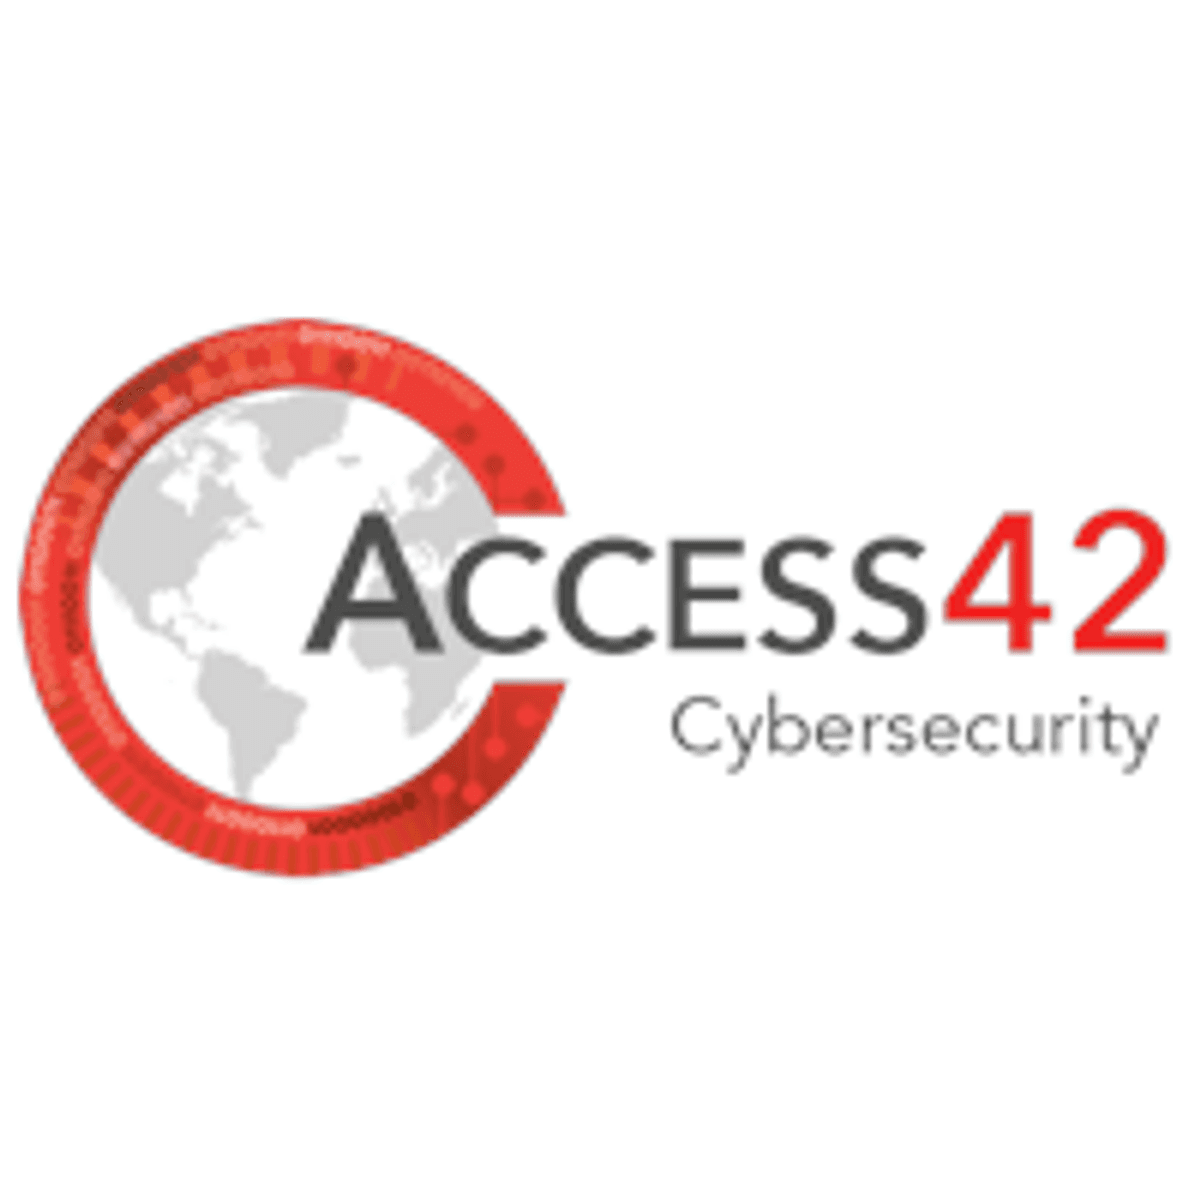 Securityleverancier Thycotic en Access42 gaan partnerovereenkomst aan image